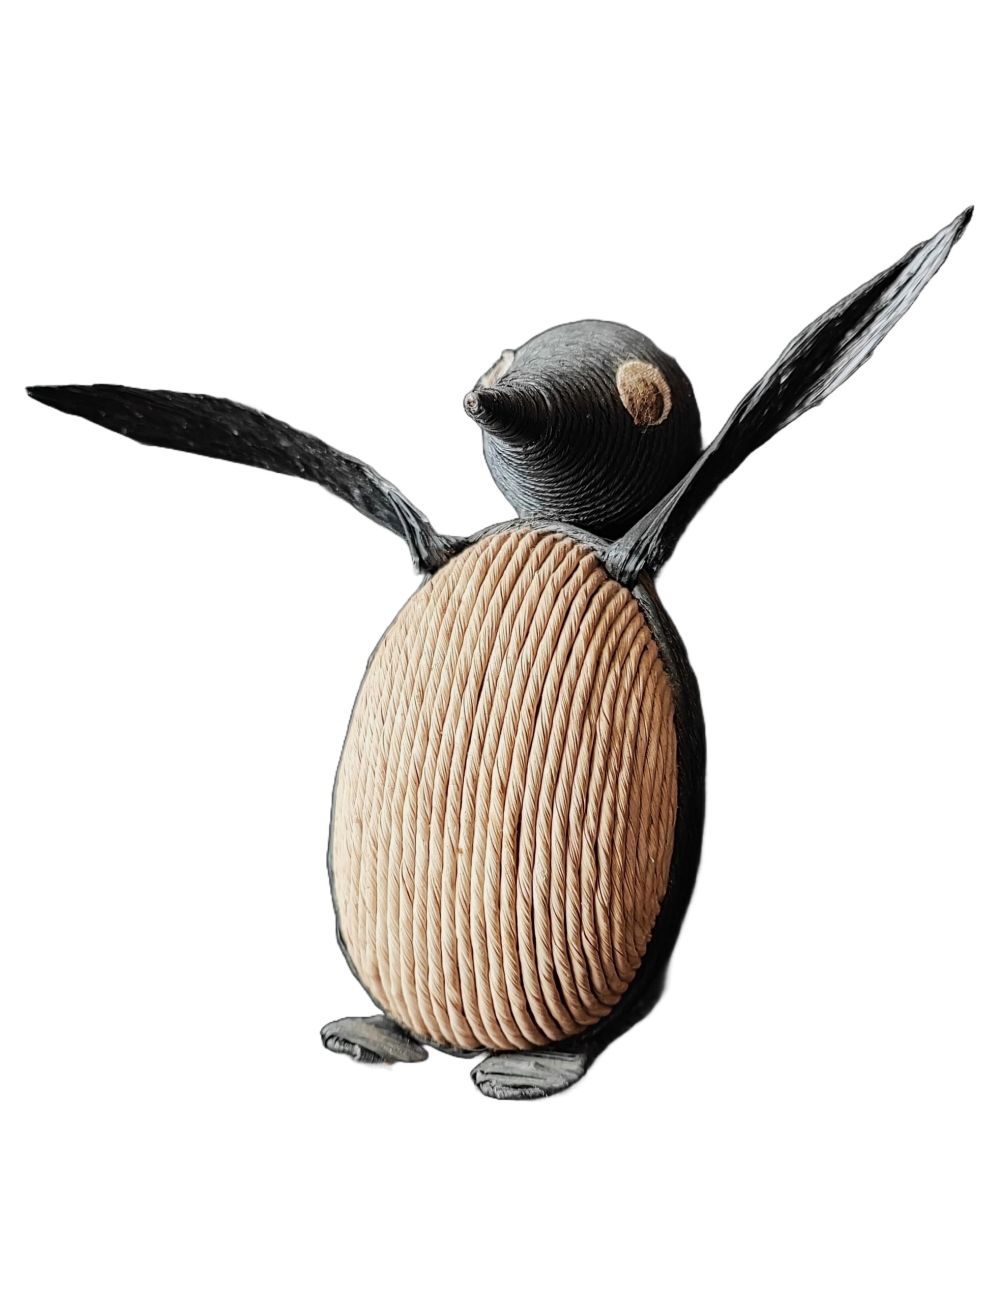 Stara wilinowa zabawka pingwinek lata 80 Czechosłowacja